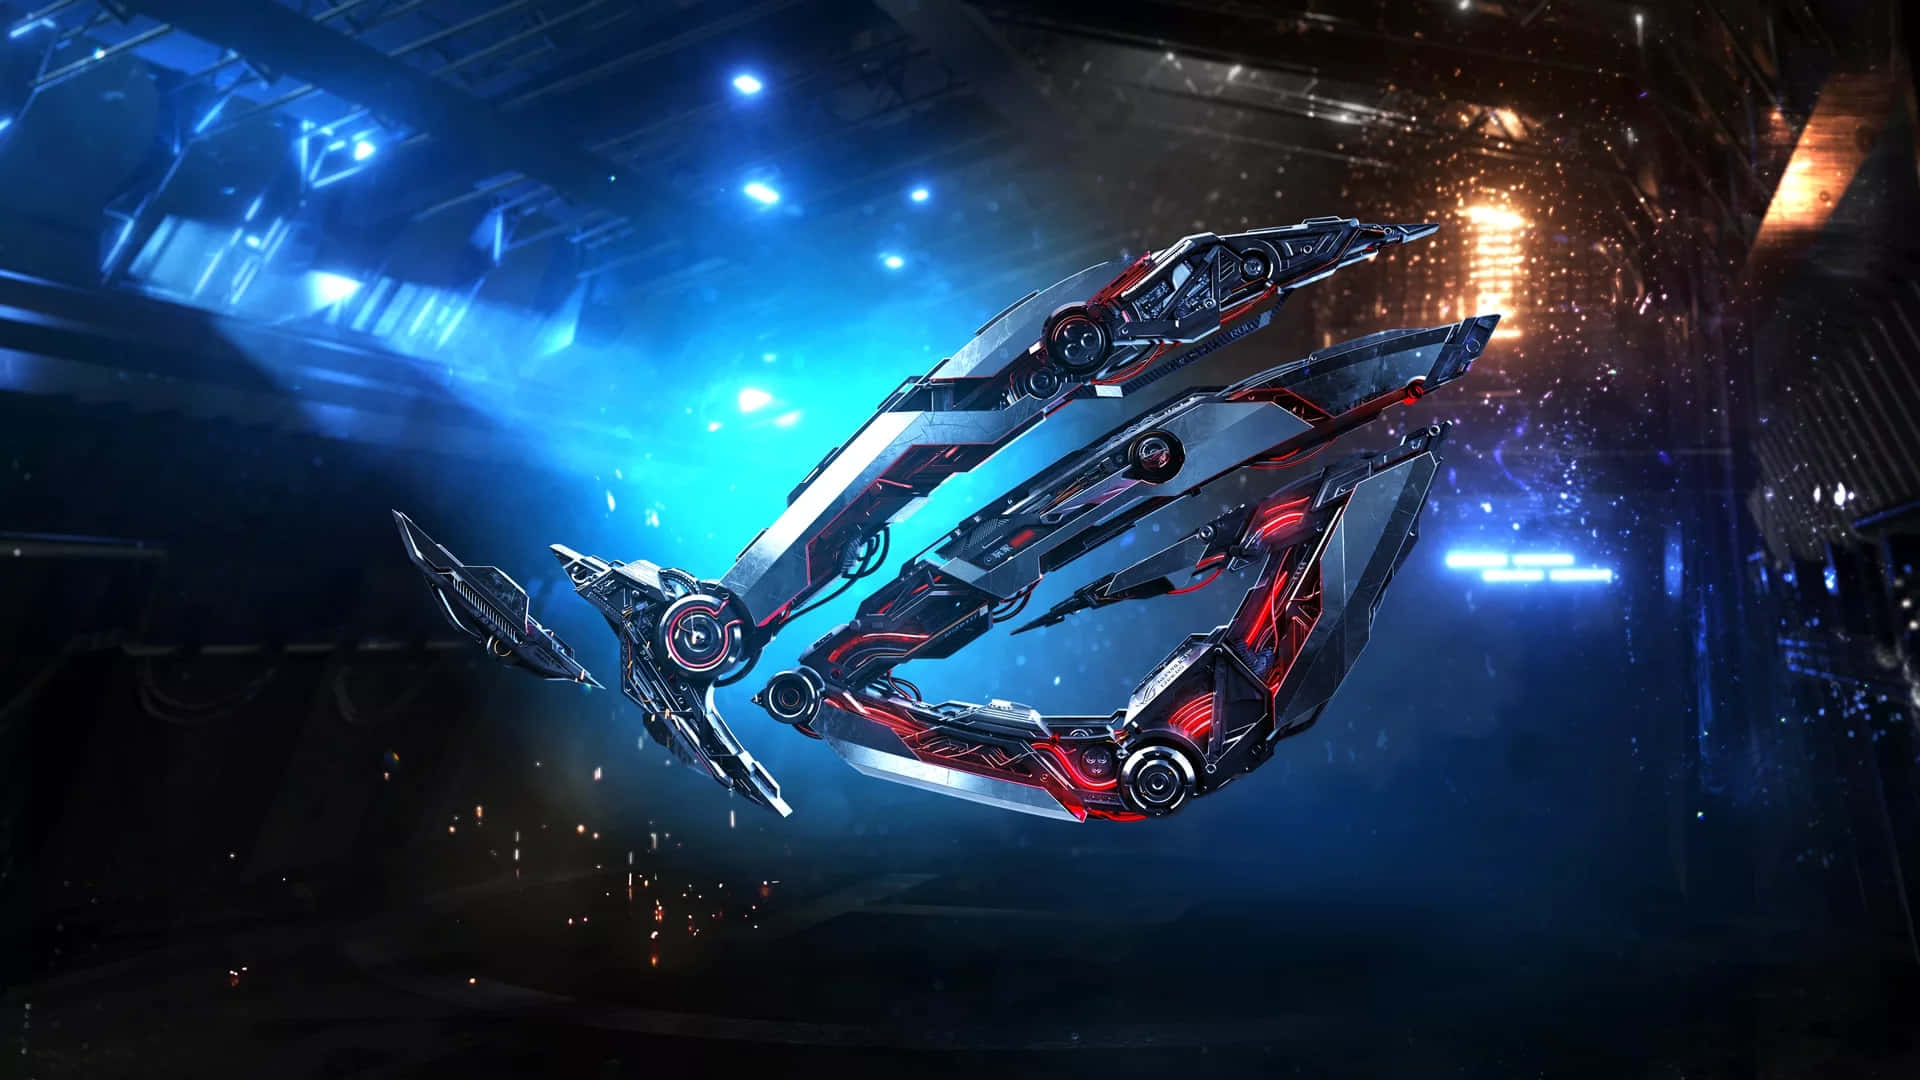 Asus T U F Gaming Spaceship Concept Art